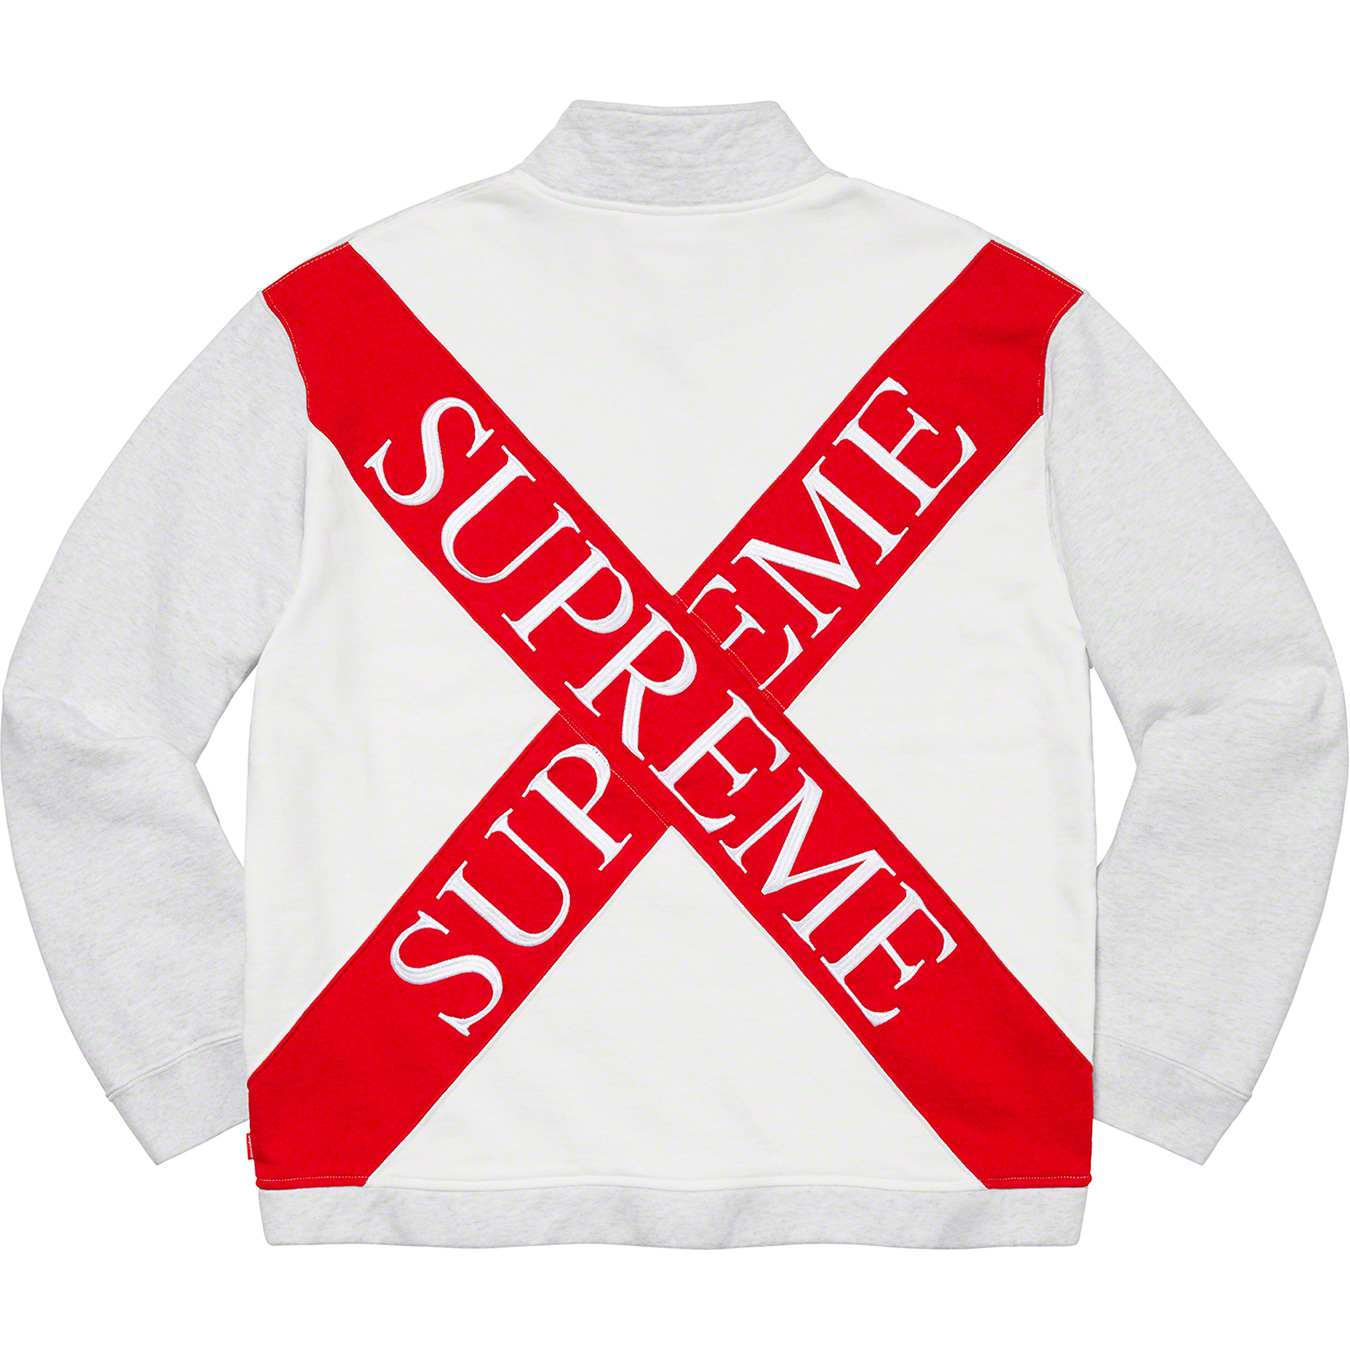 Cross Half Zip Sweatshirt - spring summer 2020 - Supreme